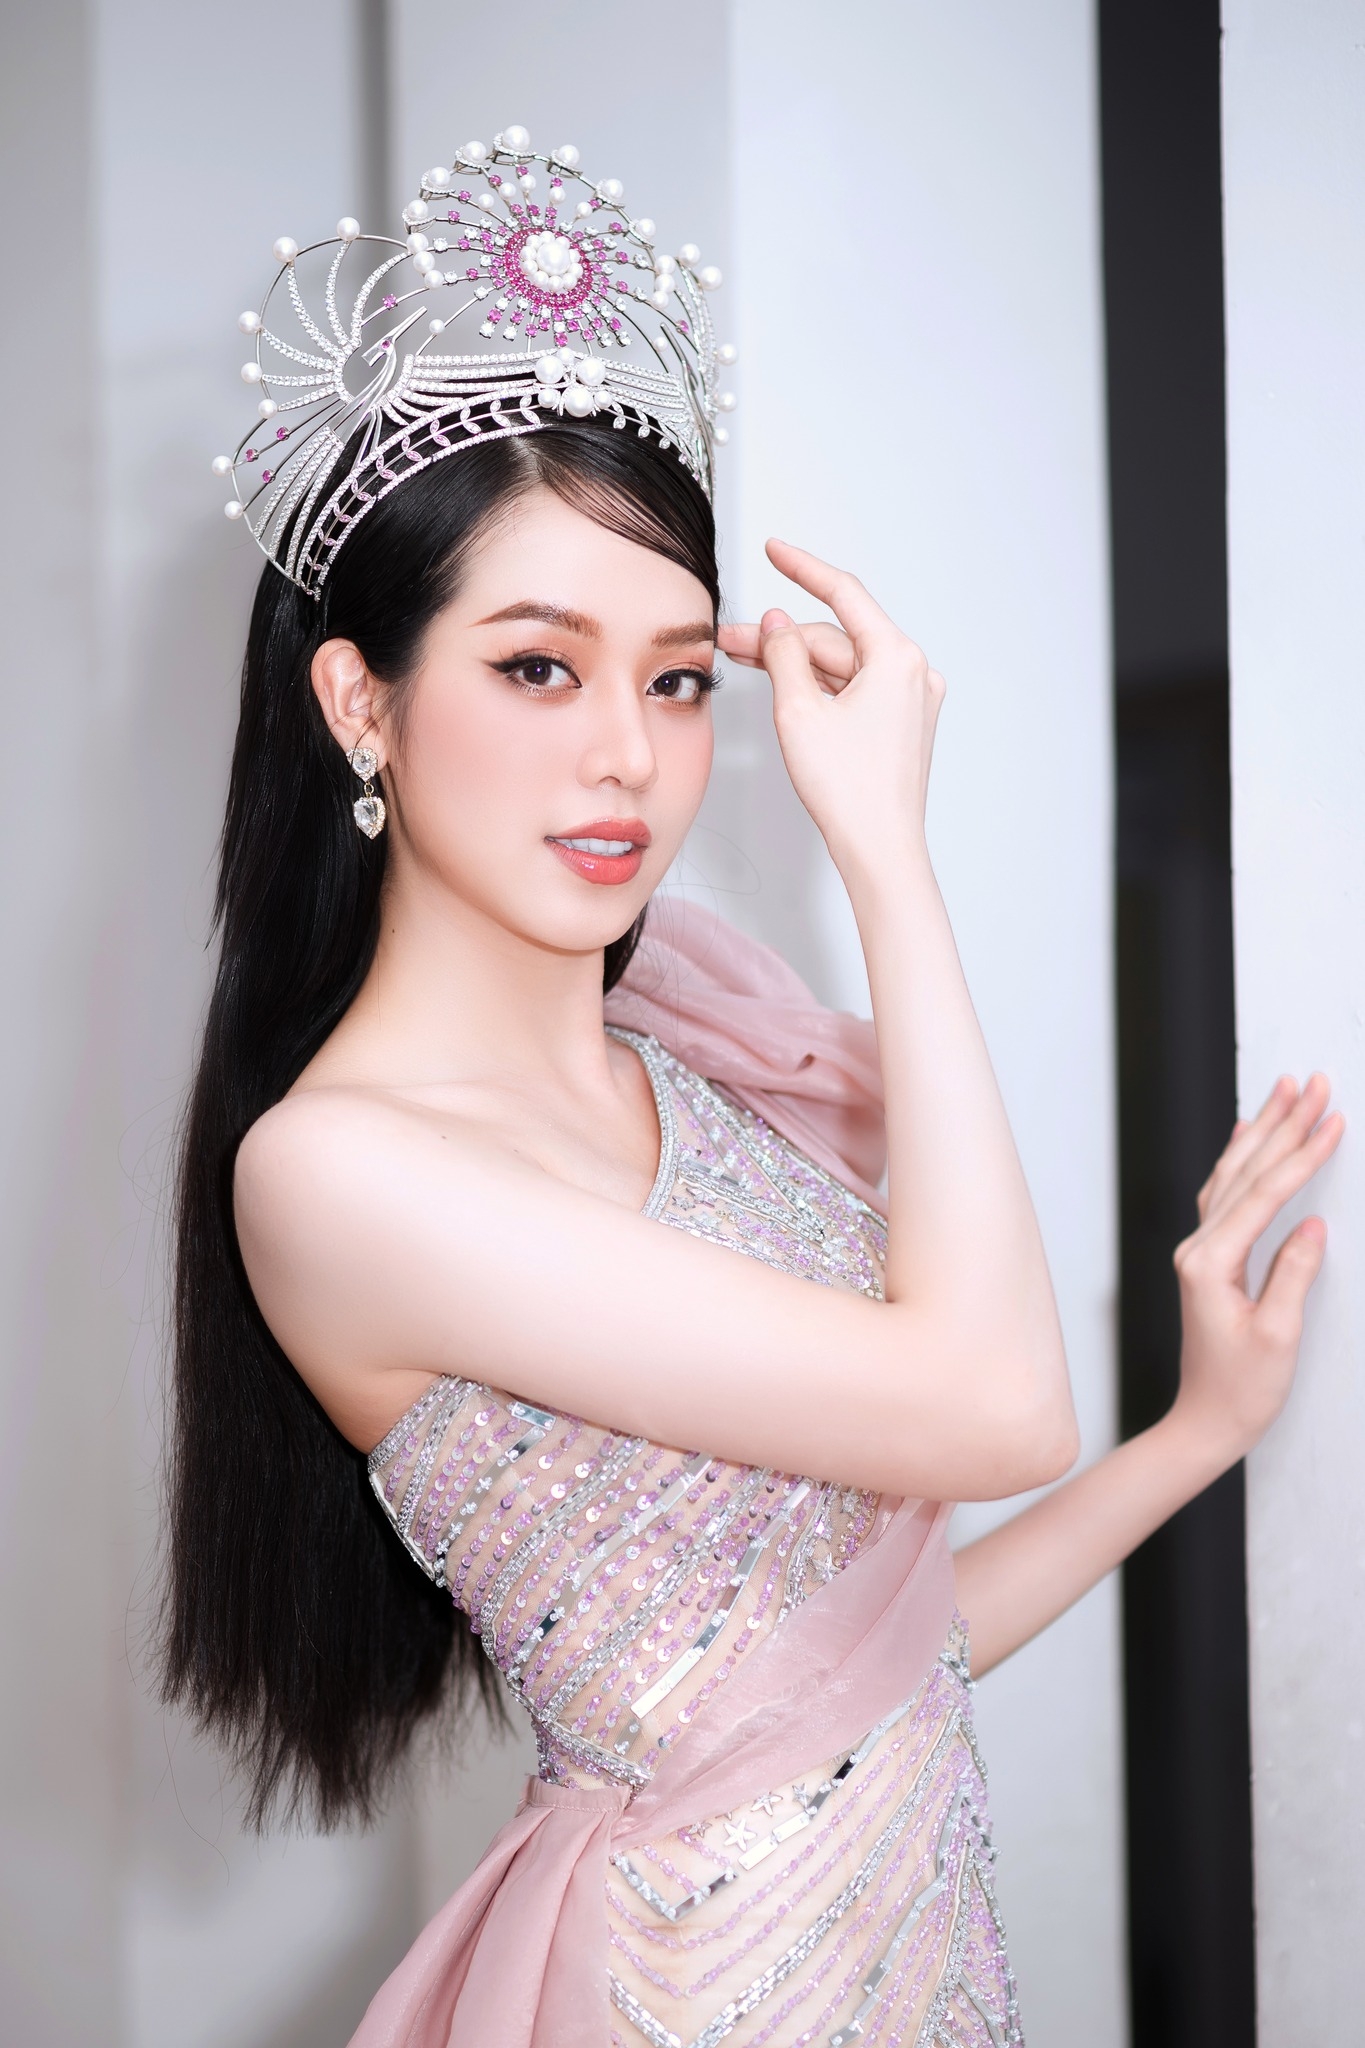 Vừa đăng quang Hoa hậu Việt Nam chưa lâu, Thanh Thủy đã công khai thừa nhận phẫu thuật thẩm mỹ